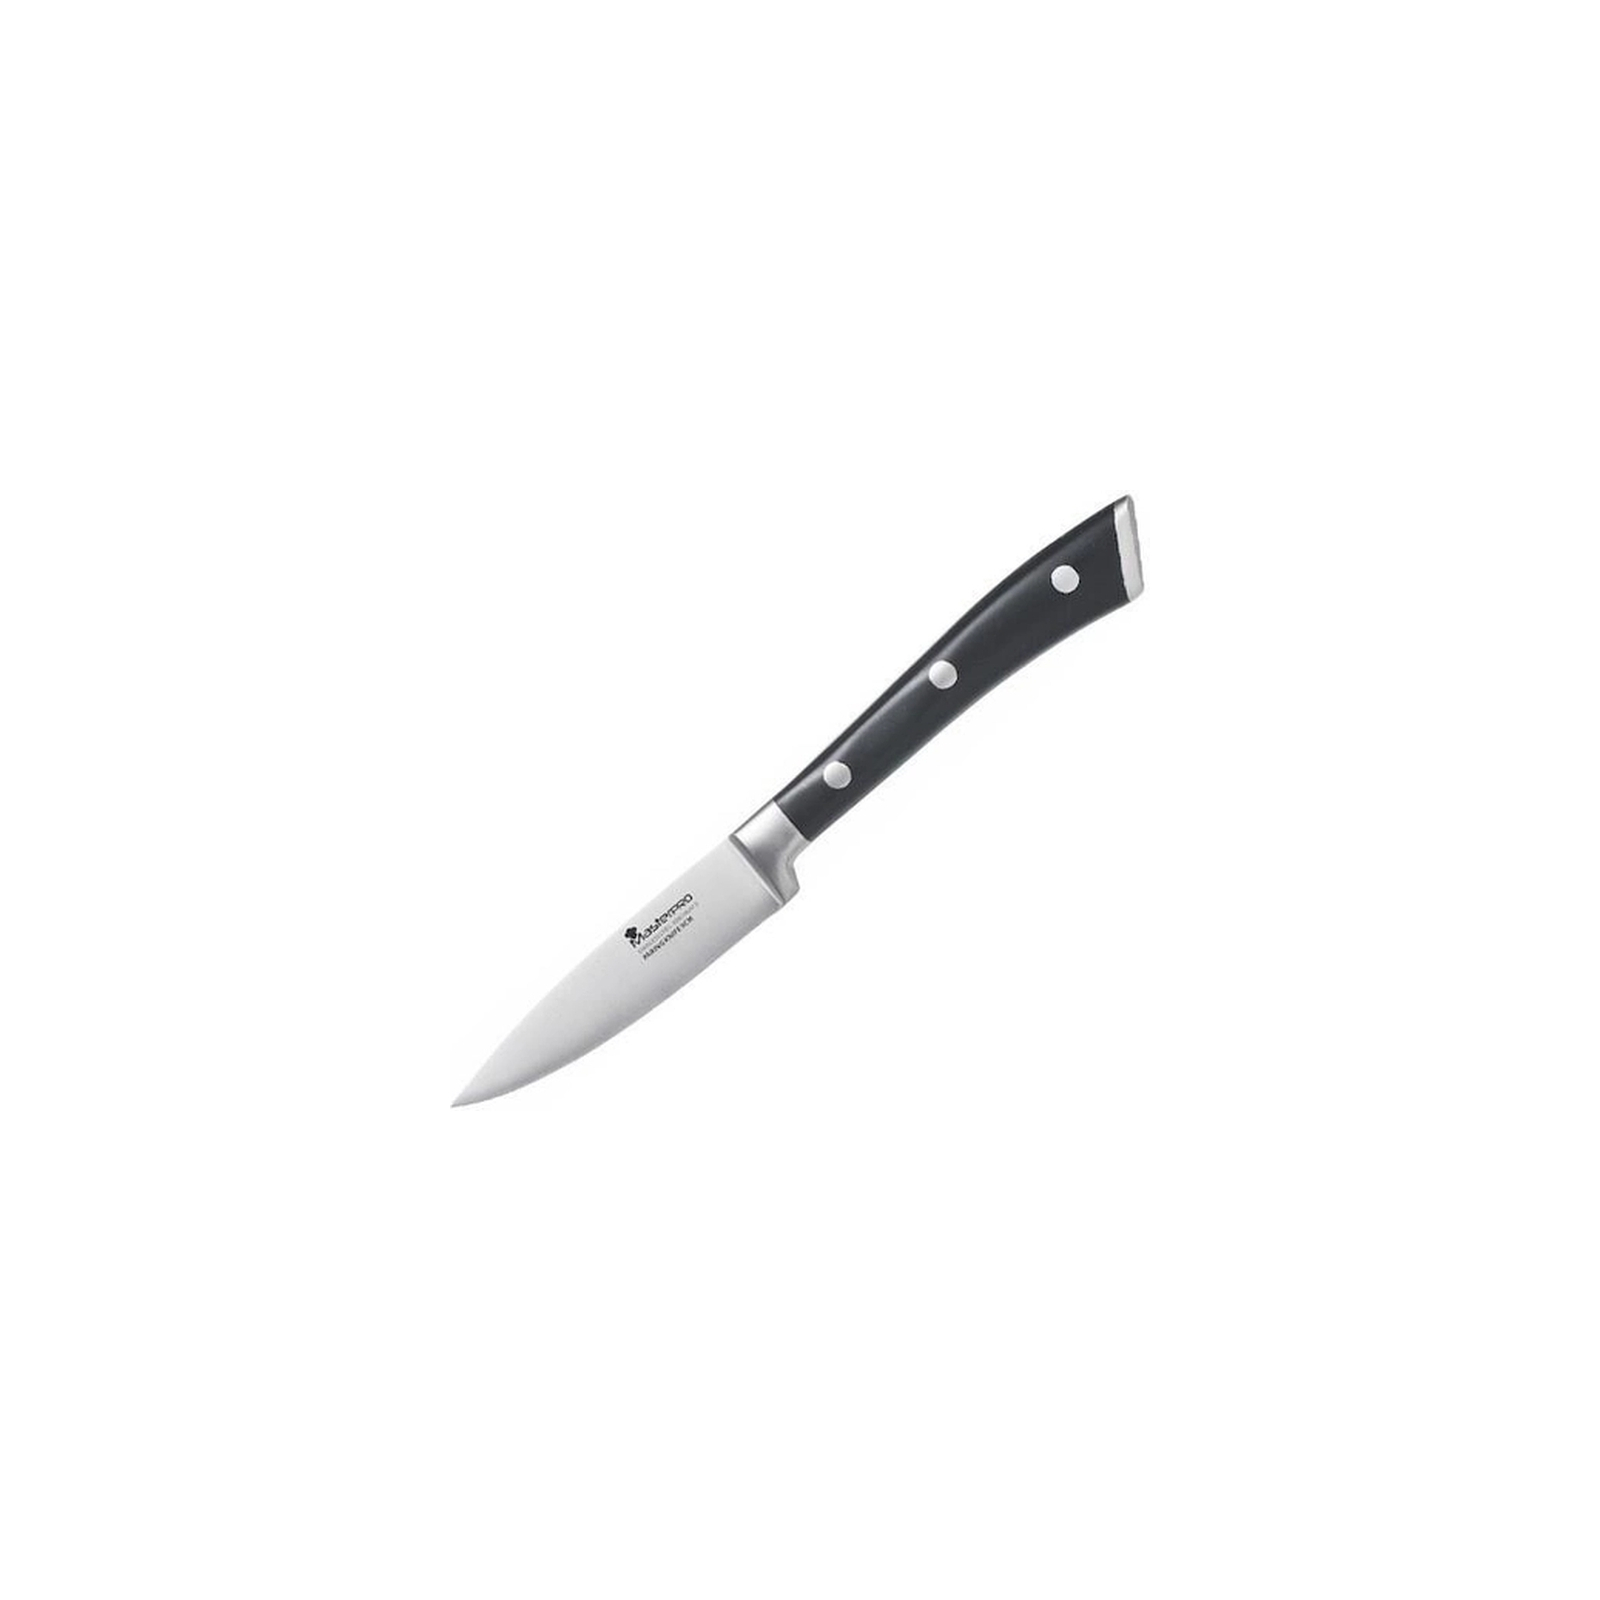 Кухонный нож MasterPro Foodies Collection для чищення 8.75 см (BGMP-4315)